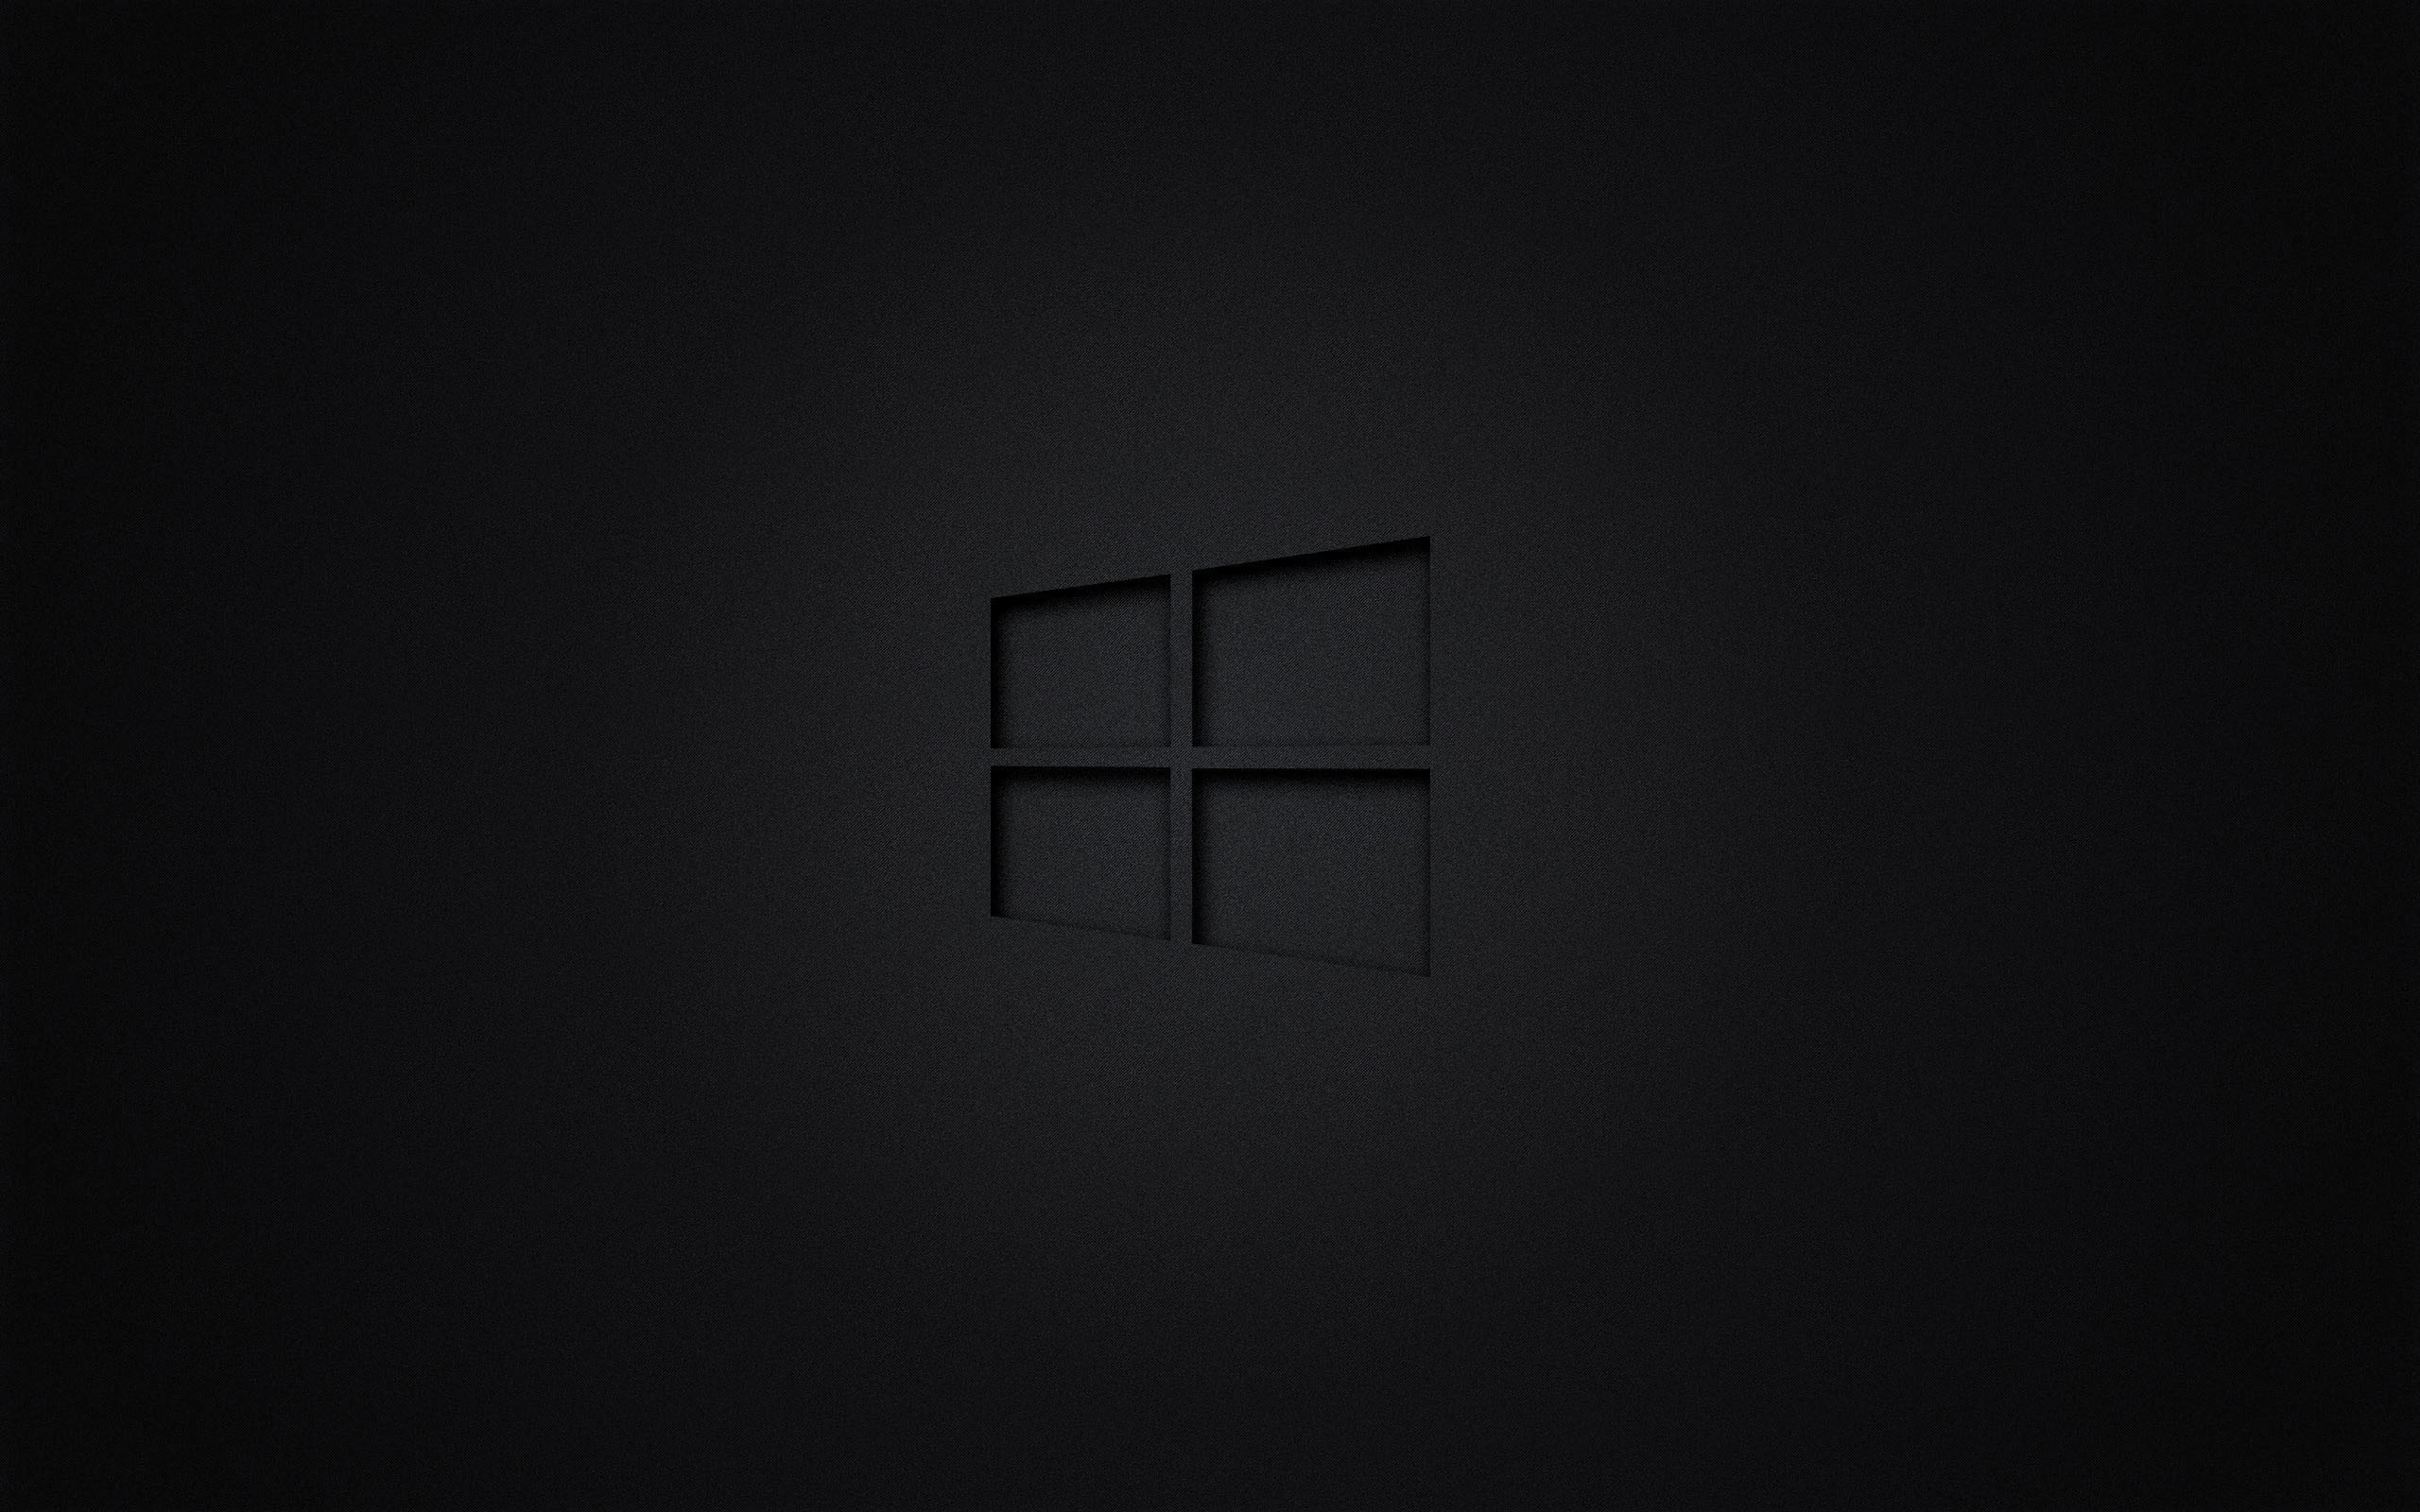 4k Wallpaper Windows 10 Theme